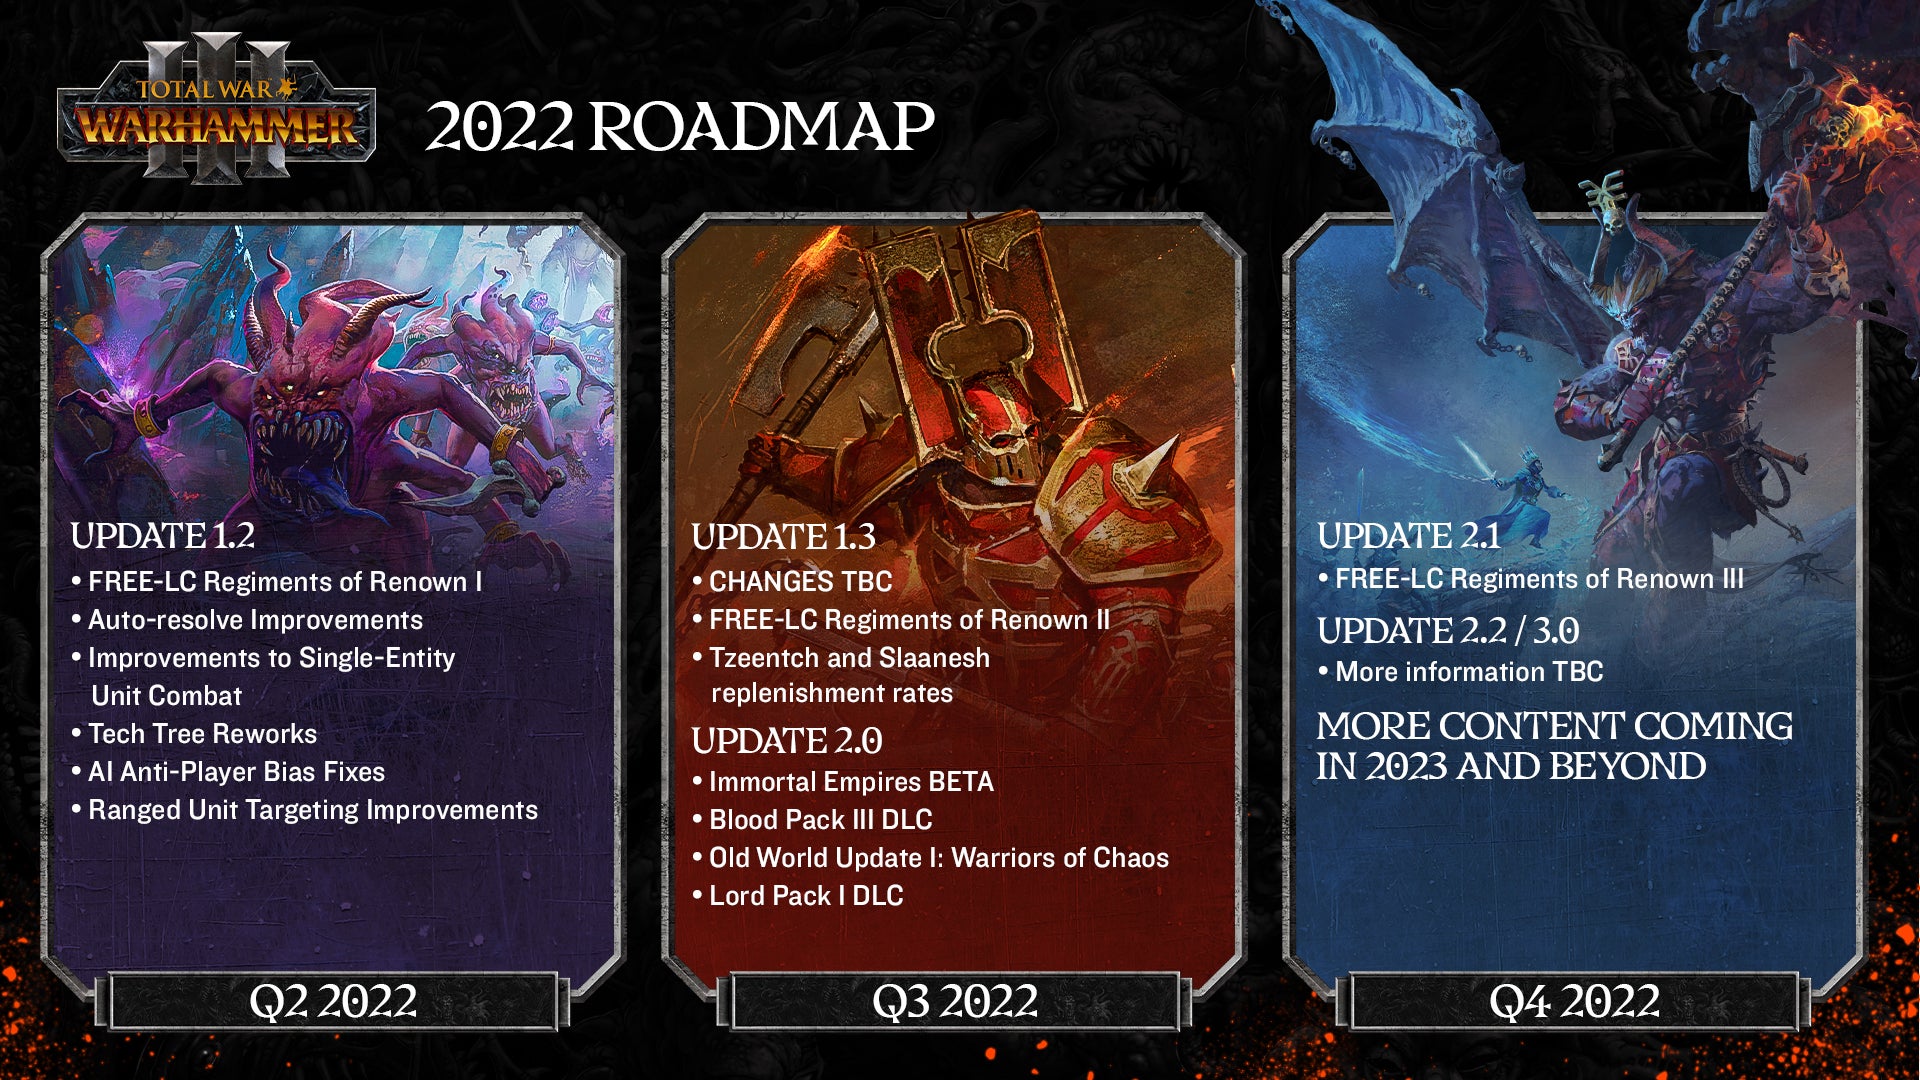 La hoja de ruta de Total War: Warhammer 3 establece planes para imperios y mods inmortales